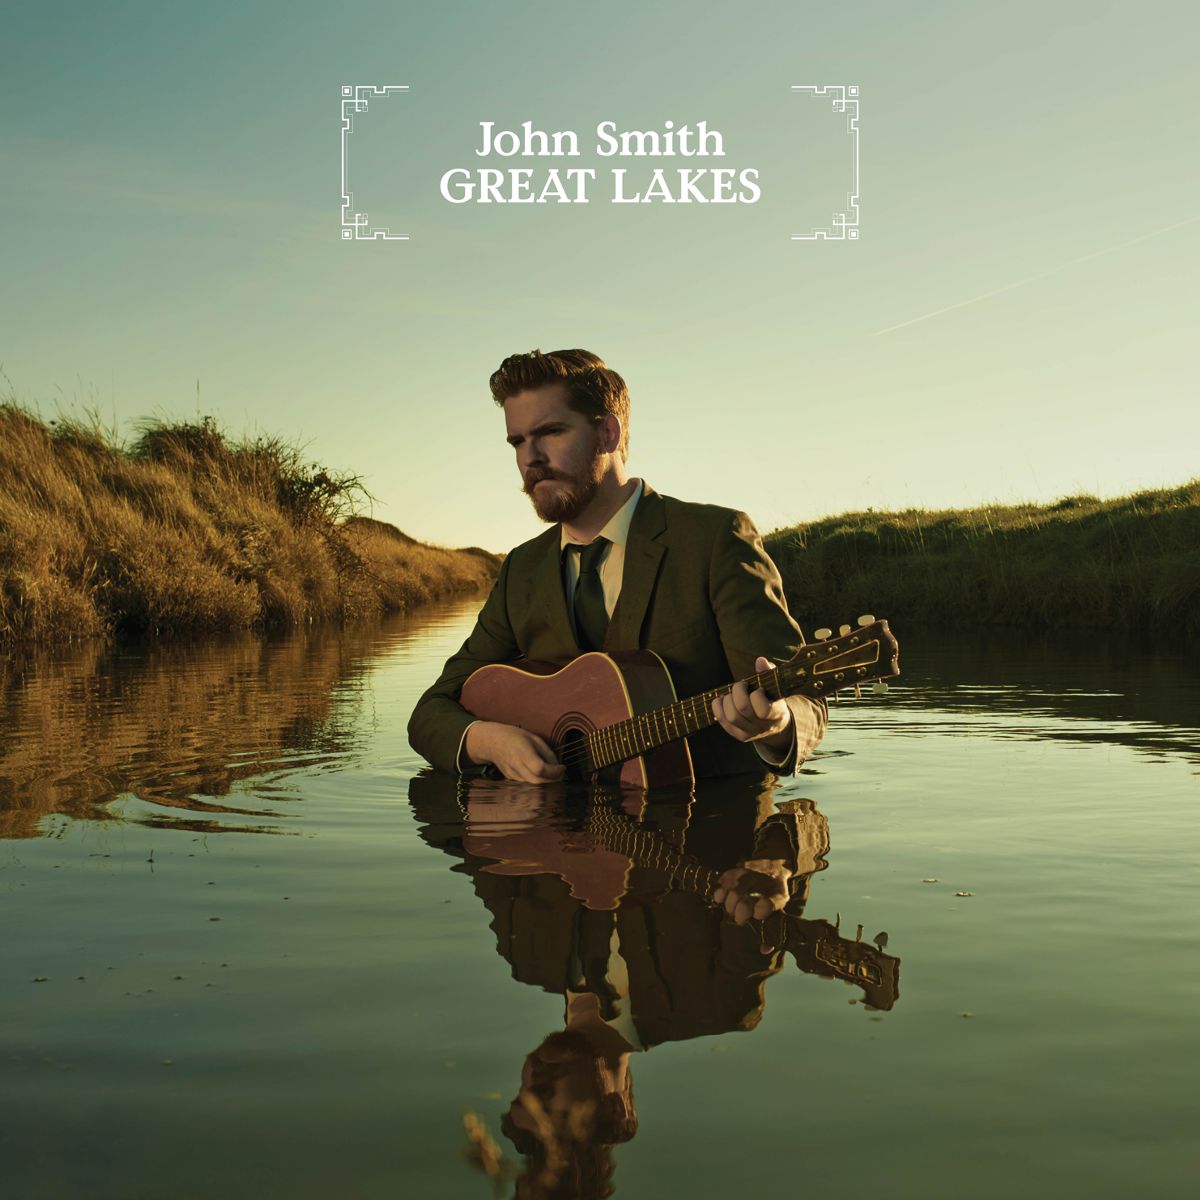 John Smith - Great Lakes (co-writer – Town to Town) image